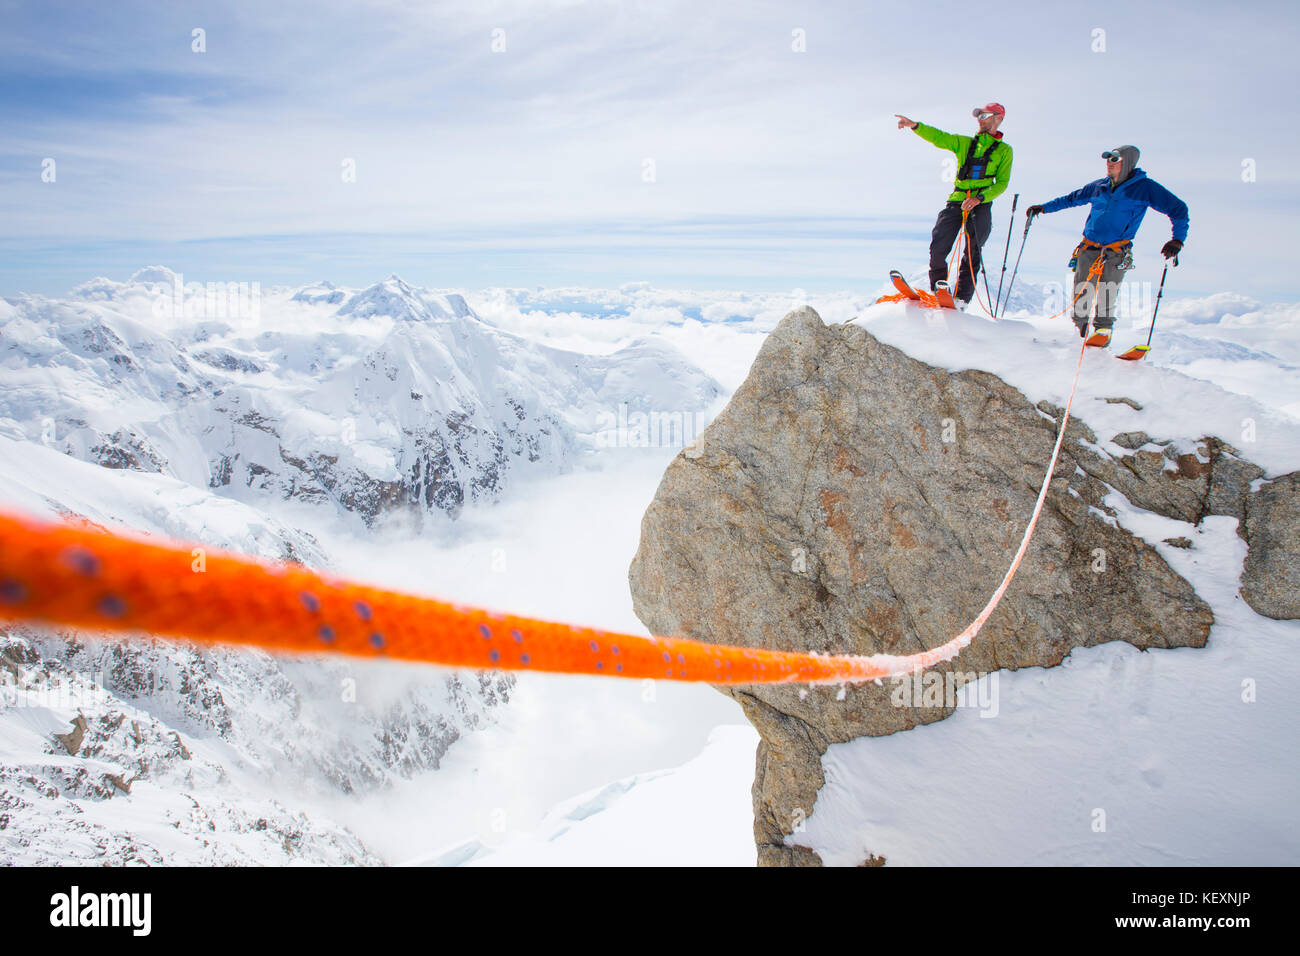 Dos montañeros de esquí están de pie en una cumbre en el Parque Nacional Denali. Uno está señalando el camino a su compañero. Una cuerda de seguridad está conectando al dúo. Denali, con sus muchos glaciares y gran cantidad de nieve caída en verano es una montaña perfecta para el esquí de fondo, alpinismo y el esquí libre. Foto de stock